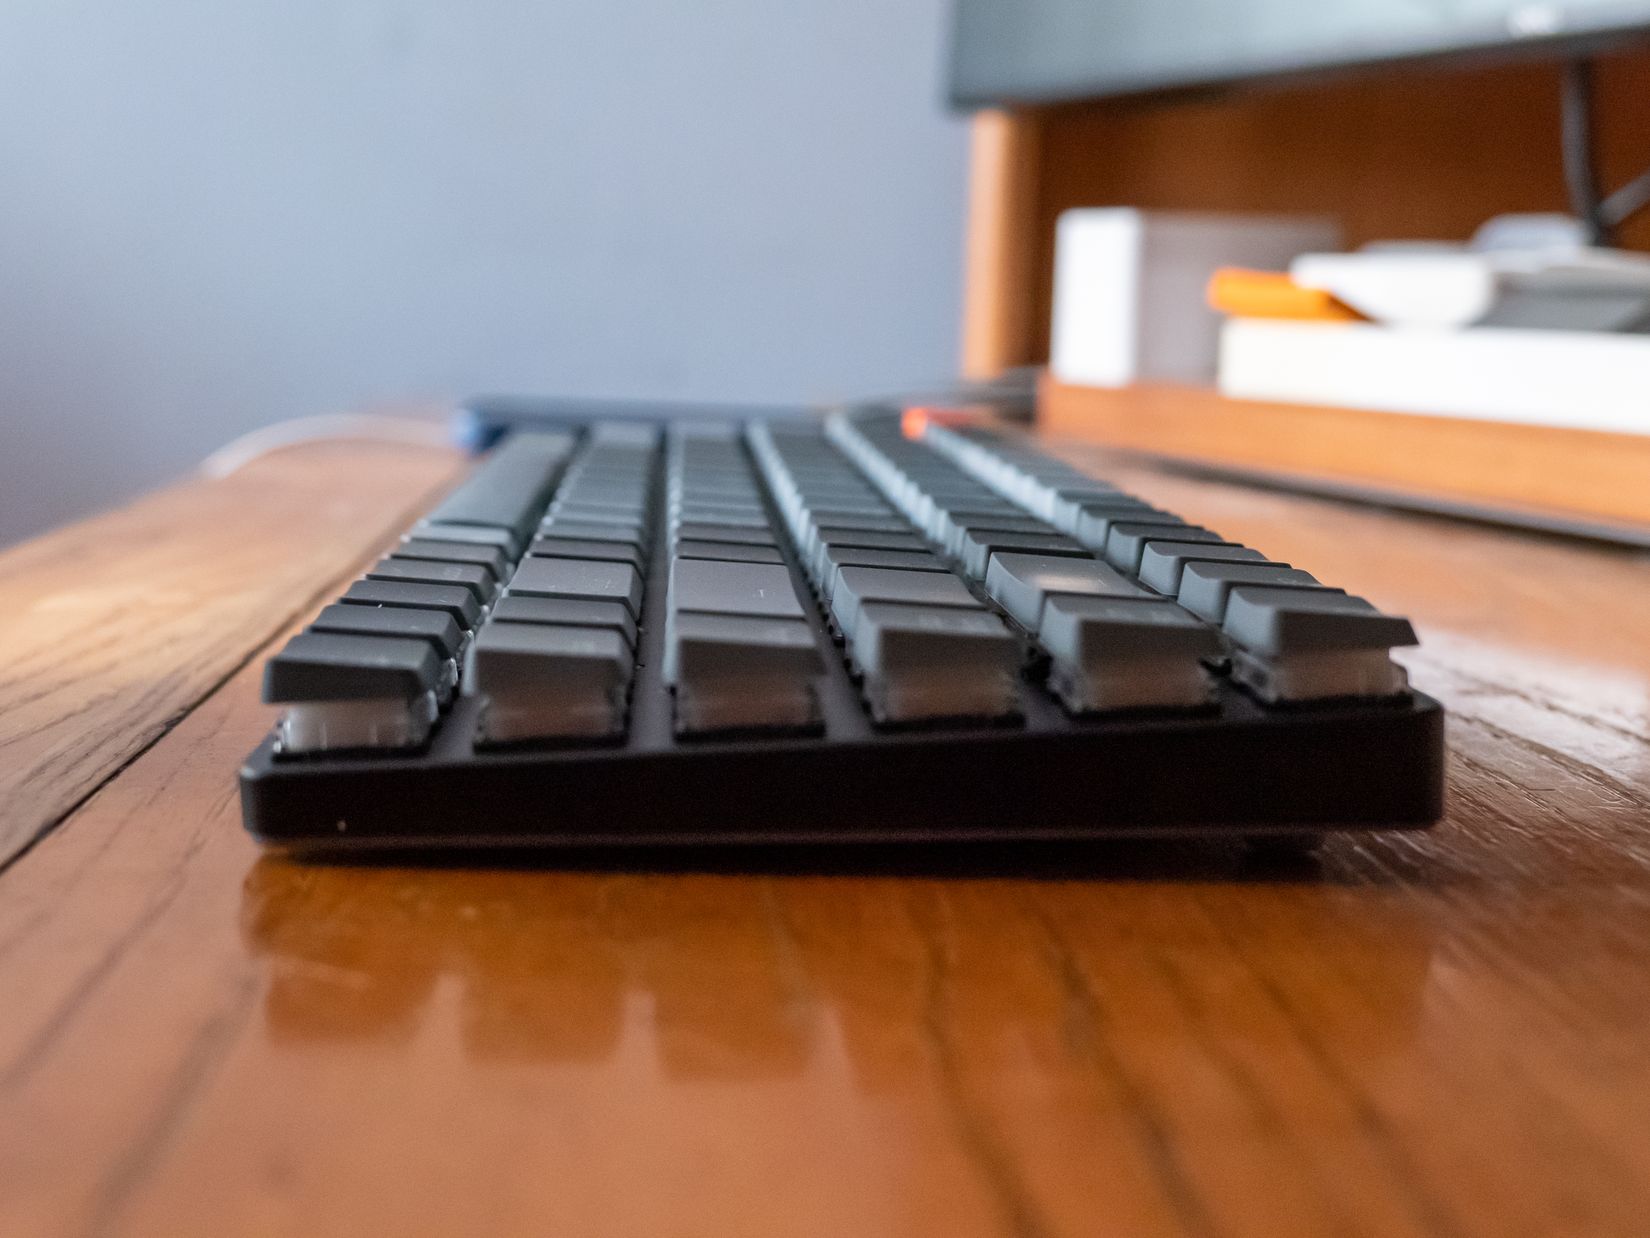 Keyboard on Desk